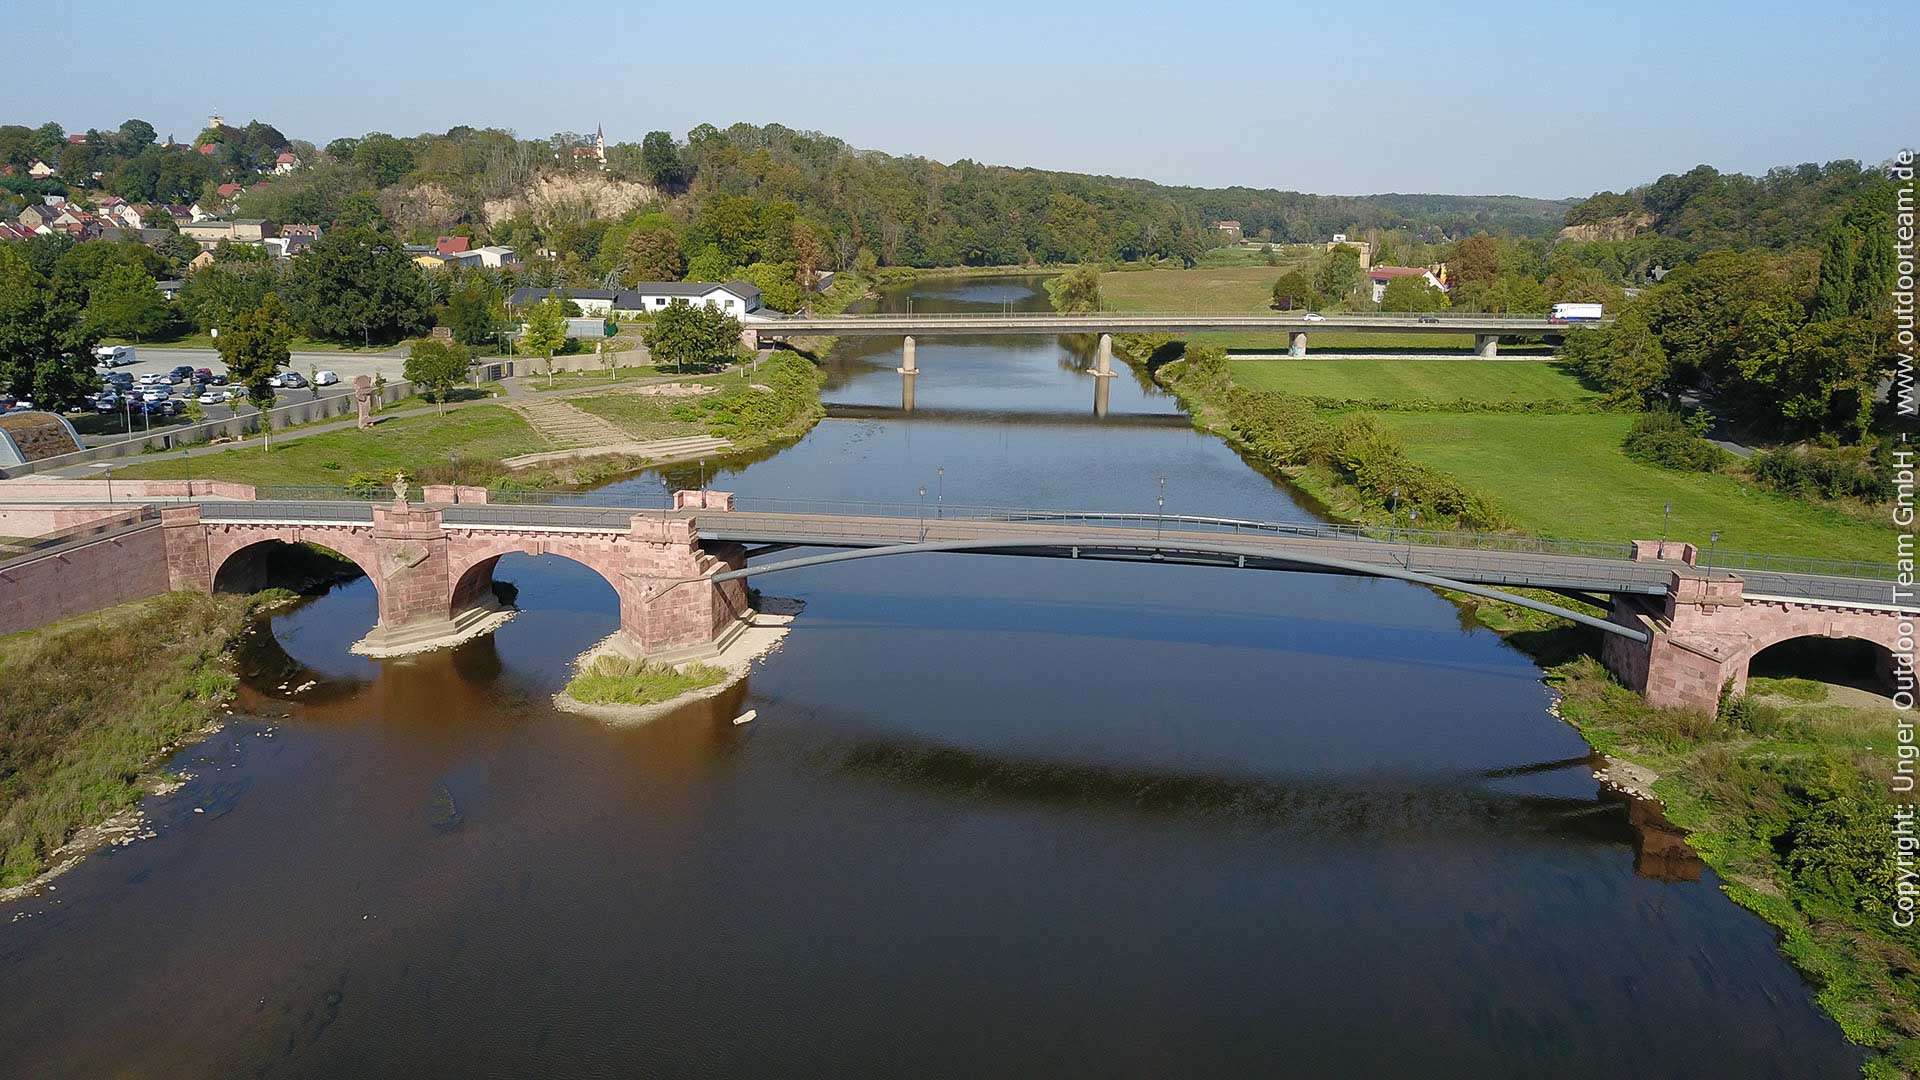 2-Tages-Paddeltour "L" Leisnig - Grimma bis Schloss Trebsen oder Wurzen - im Bild die Pöppelmannbrücke in Grimma, welche zum Jahrhunderthochwasser 2002 t.w. zerstört wurde